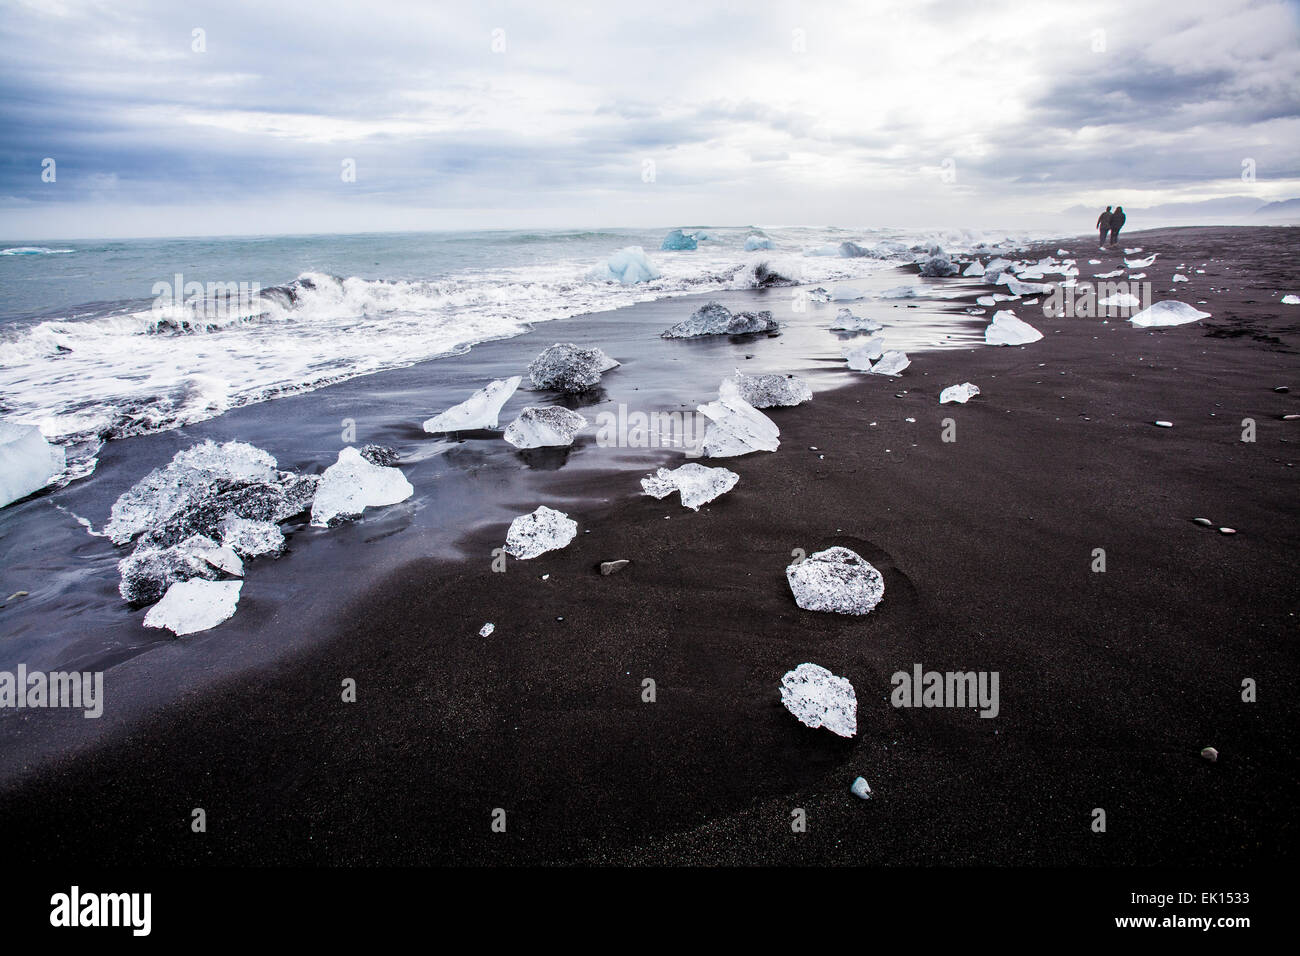 Vue sur des morceaux de glace provenant des icebergs à l'océan près de la lagune glaciaire du Jökulsárlón dans le sud de l'Islande Banque D'Images